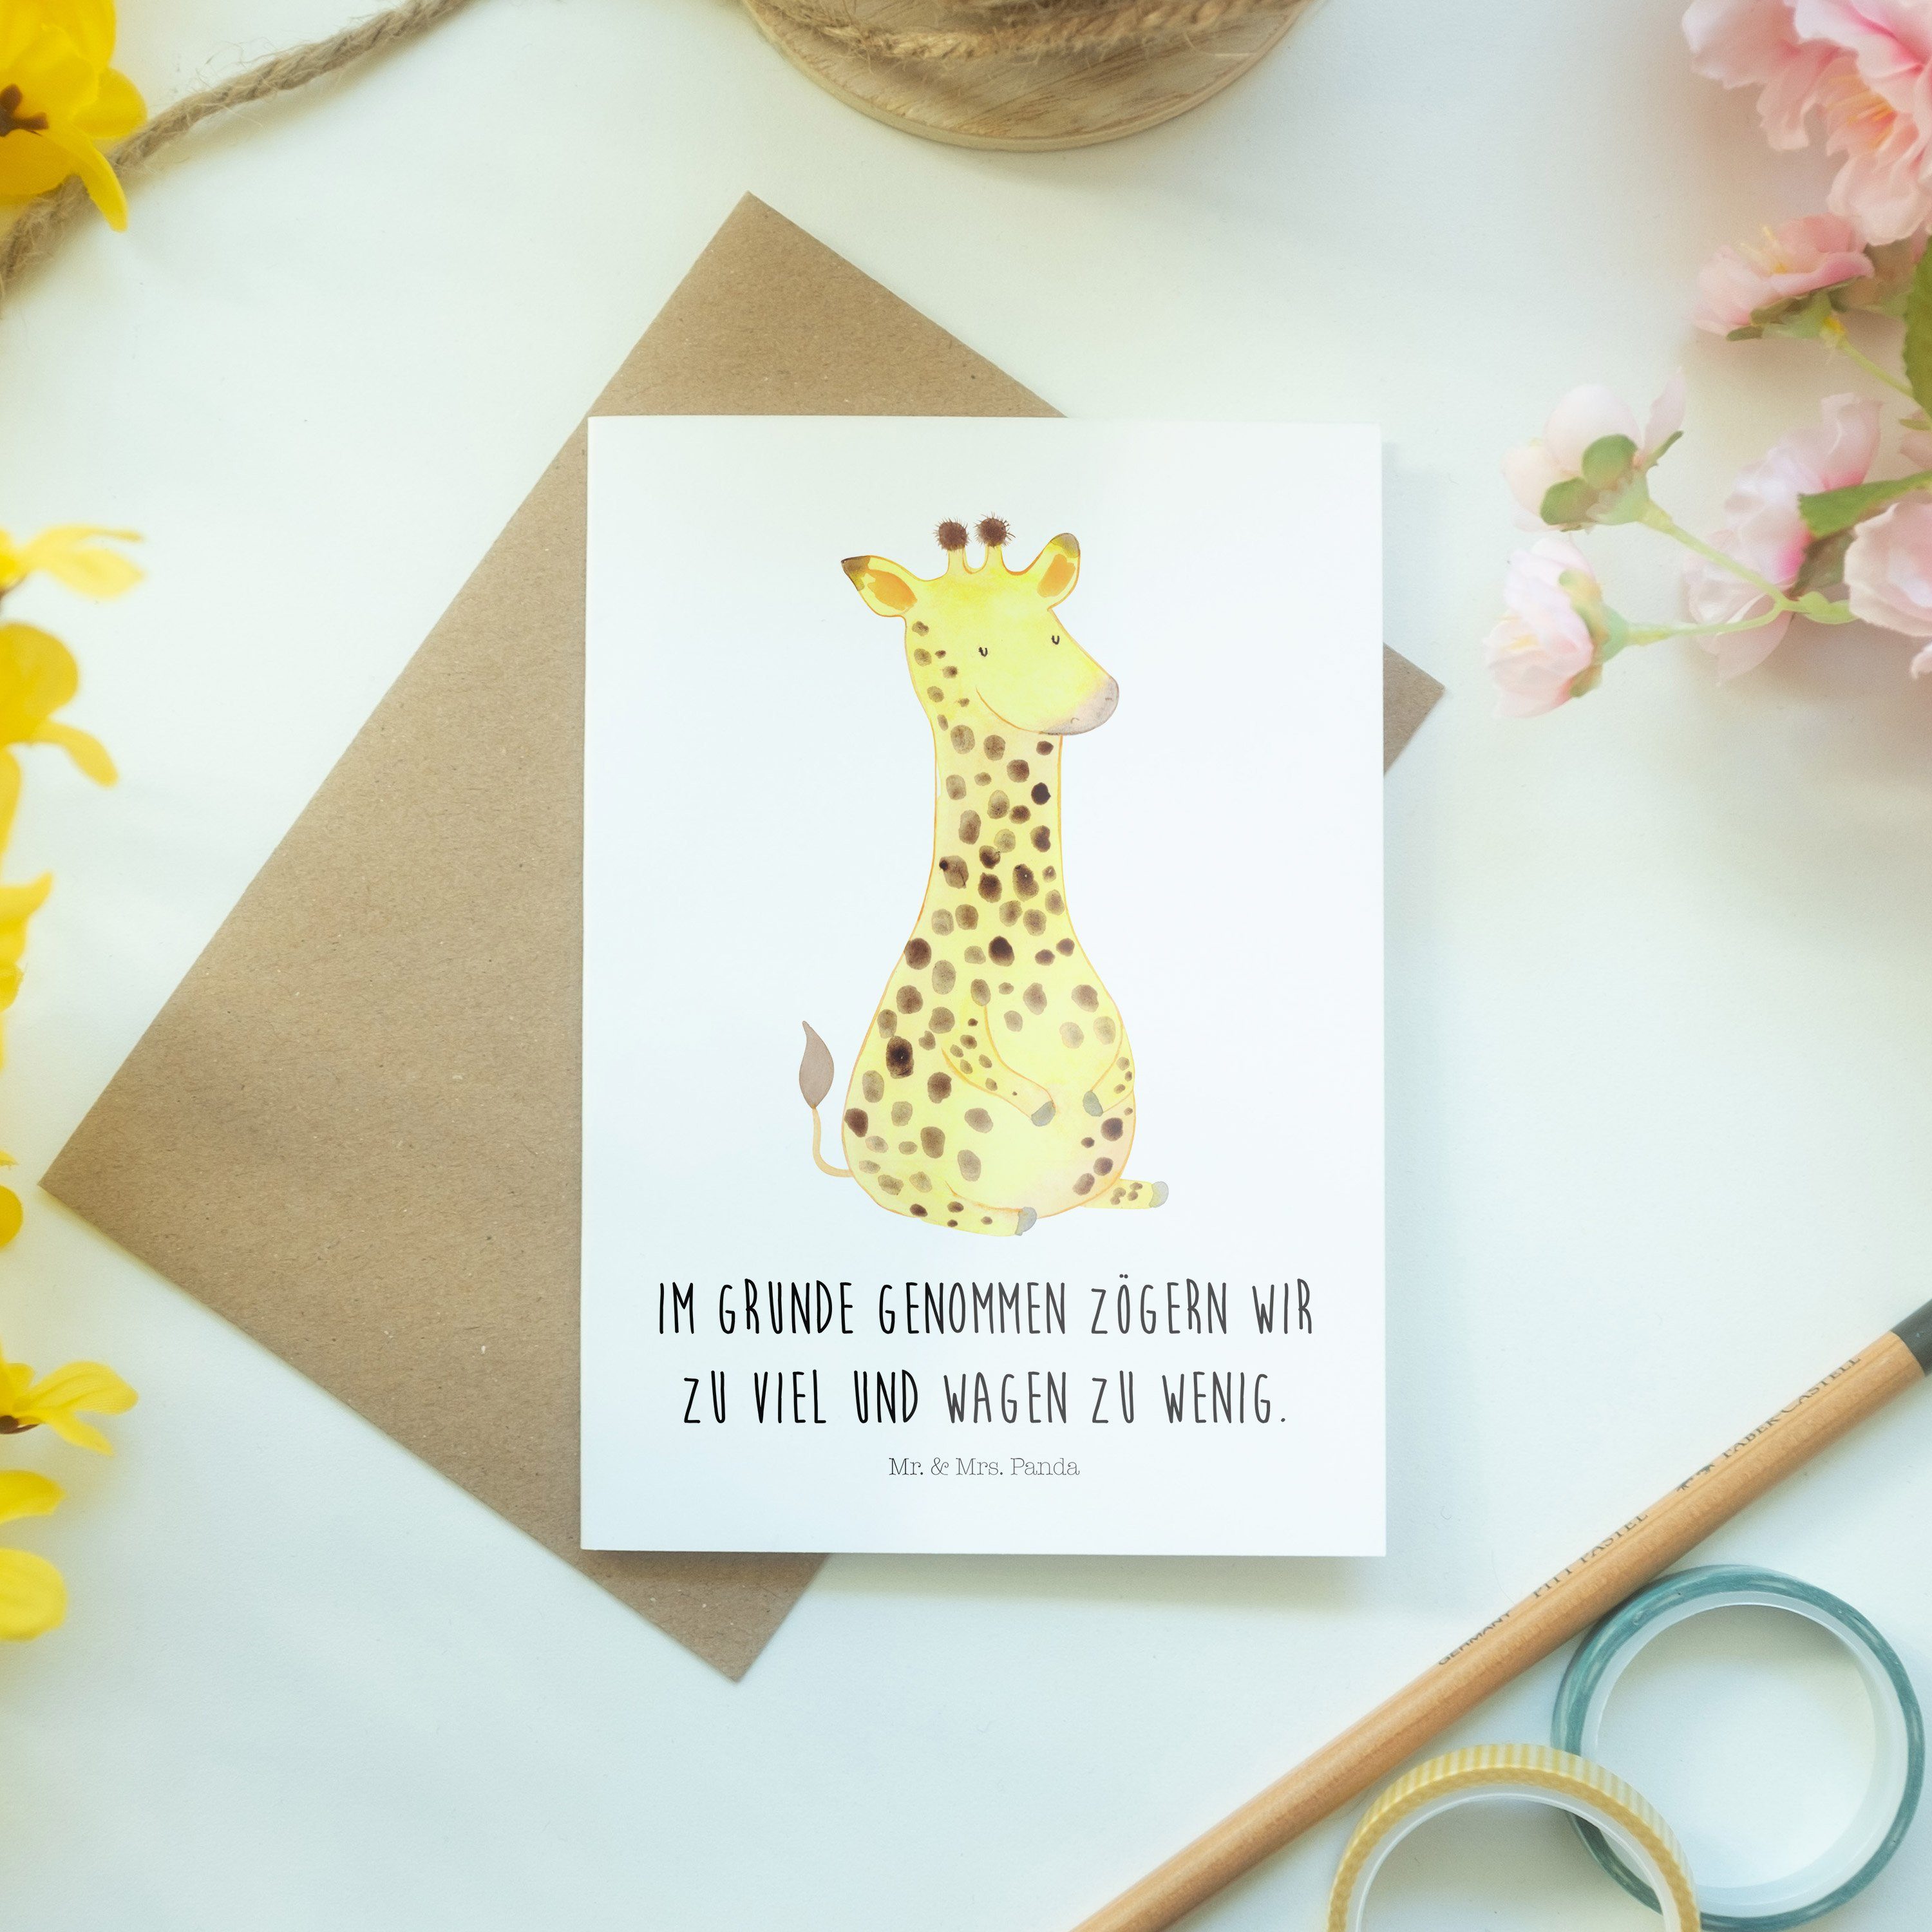 Mr. & Einlad Geburtstagskarte, Weiß Zufrieden Panda Grußkarte Giraffe Afrika, - Mrs. Geschenk, -